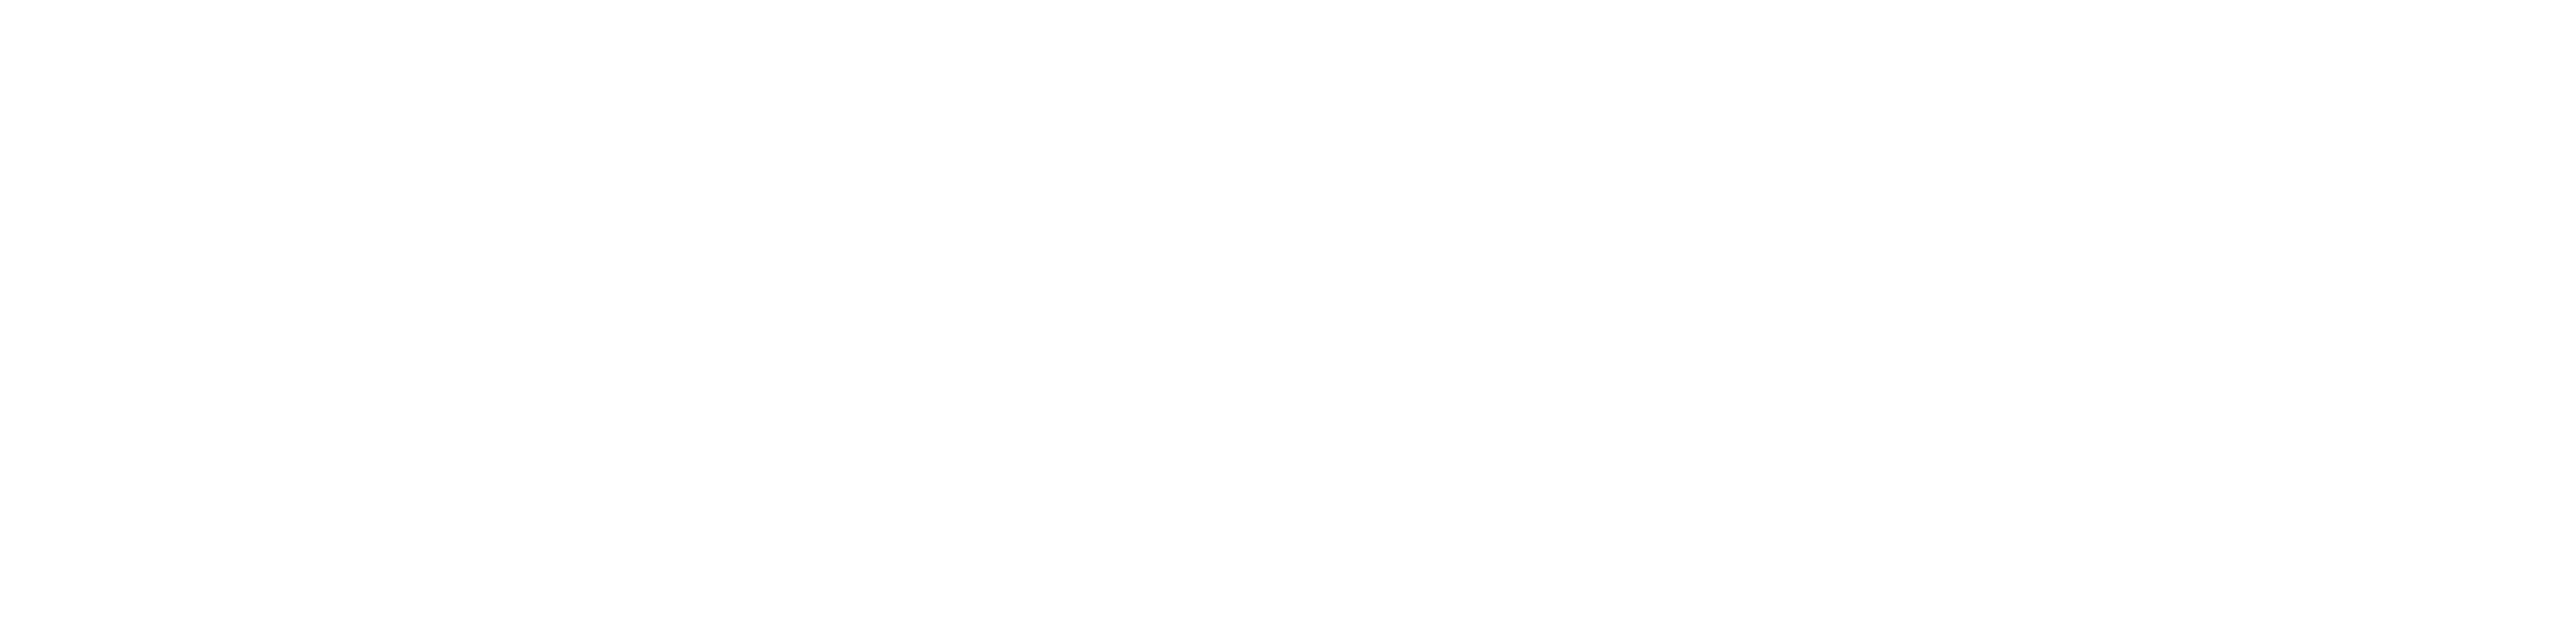 Sparkling Productions – Association - Site Officiel de l'association Sparkling Productions